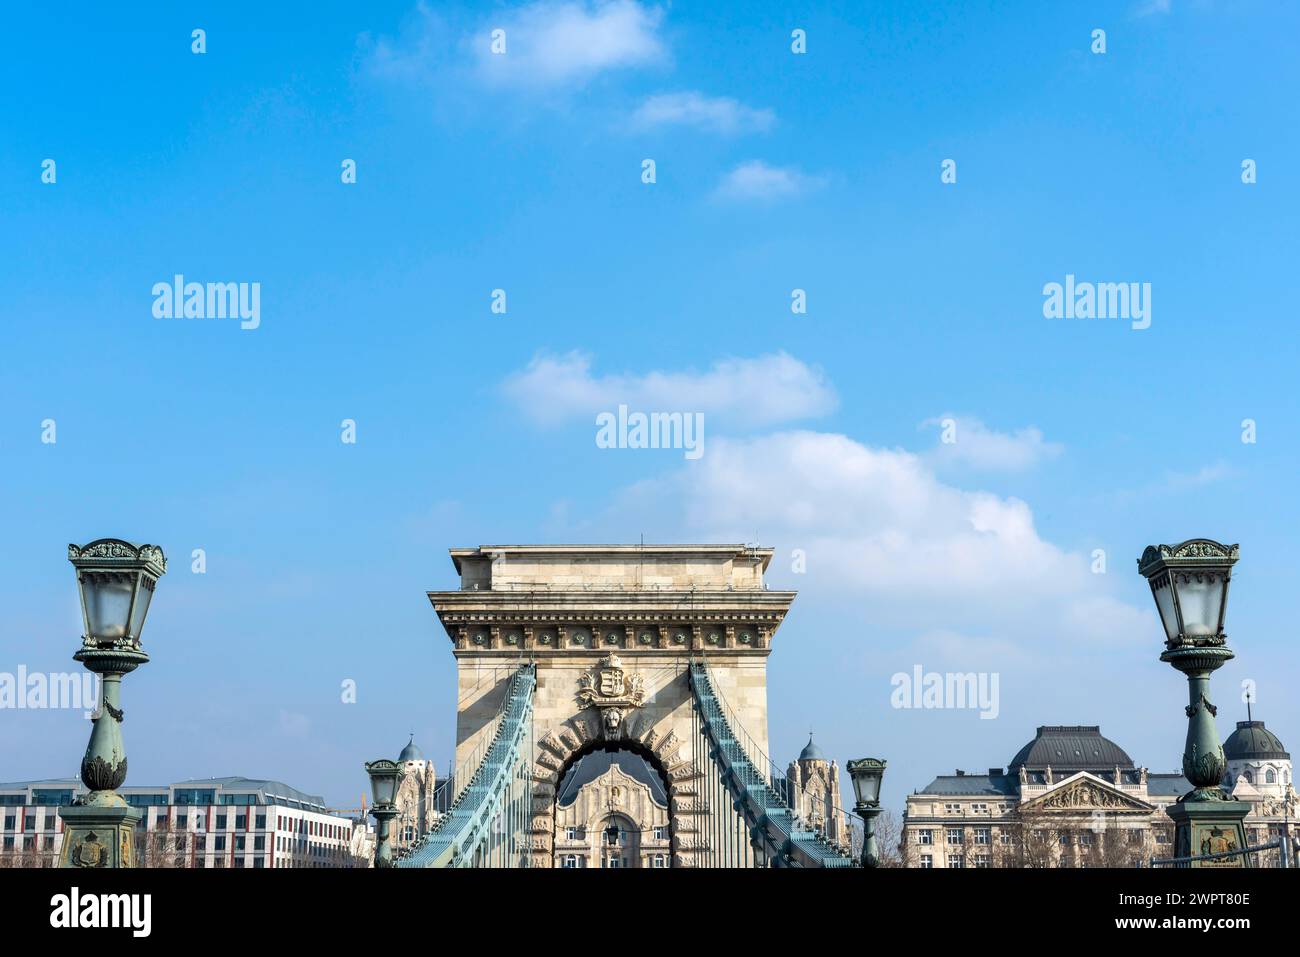 Il Ponte delle catene sul Danubio, ponte sospeso, edificio, politica, storia, viaggio in città, cielo blu, viaggio, turismo, architettura, Europa orientale Foto Stock